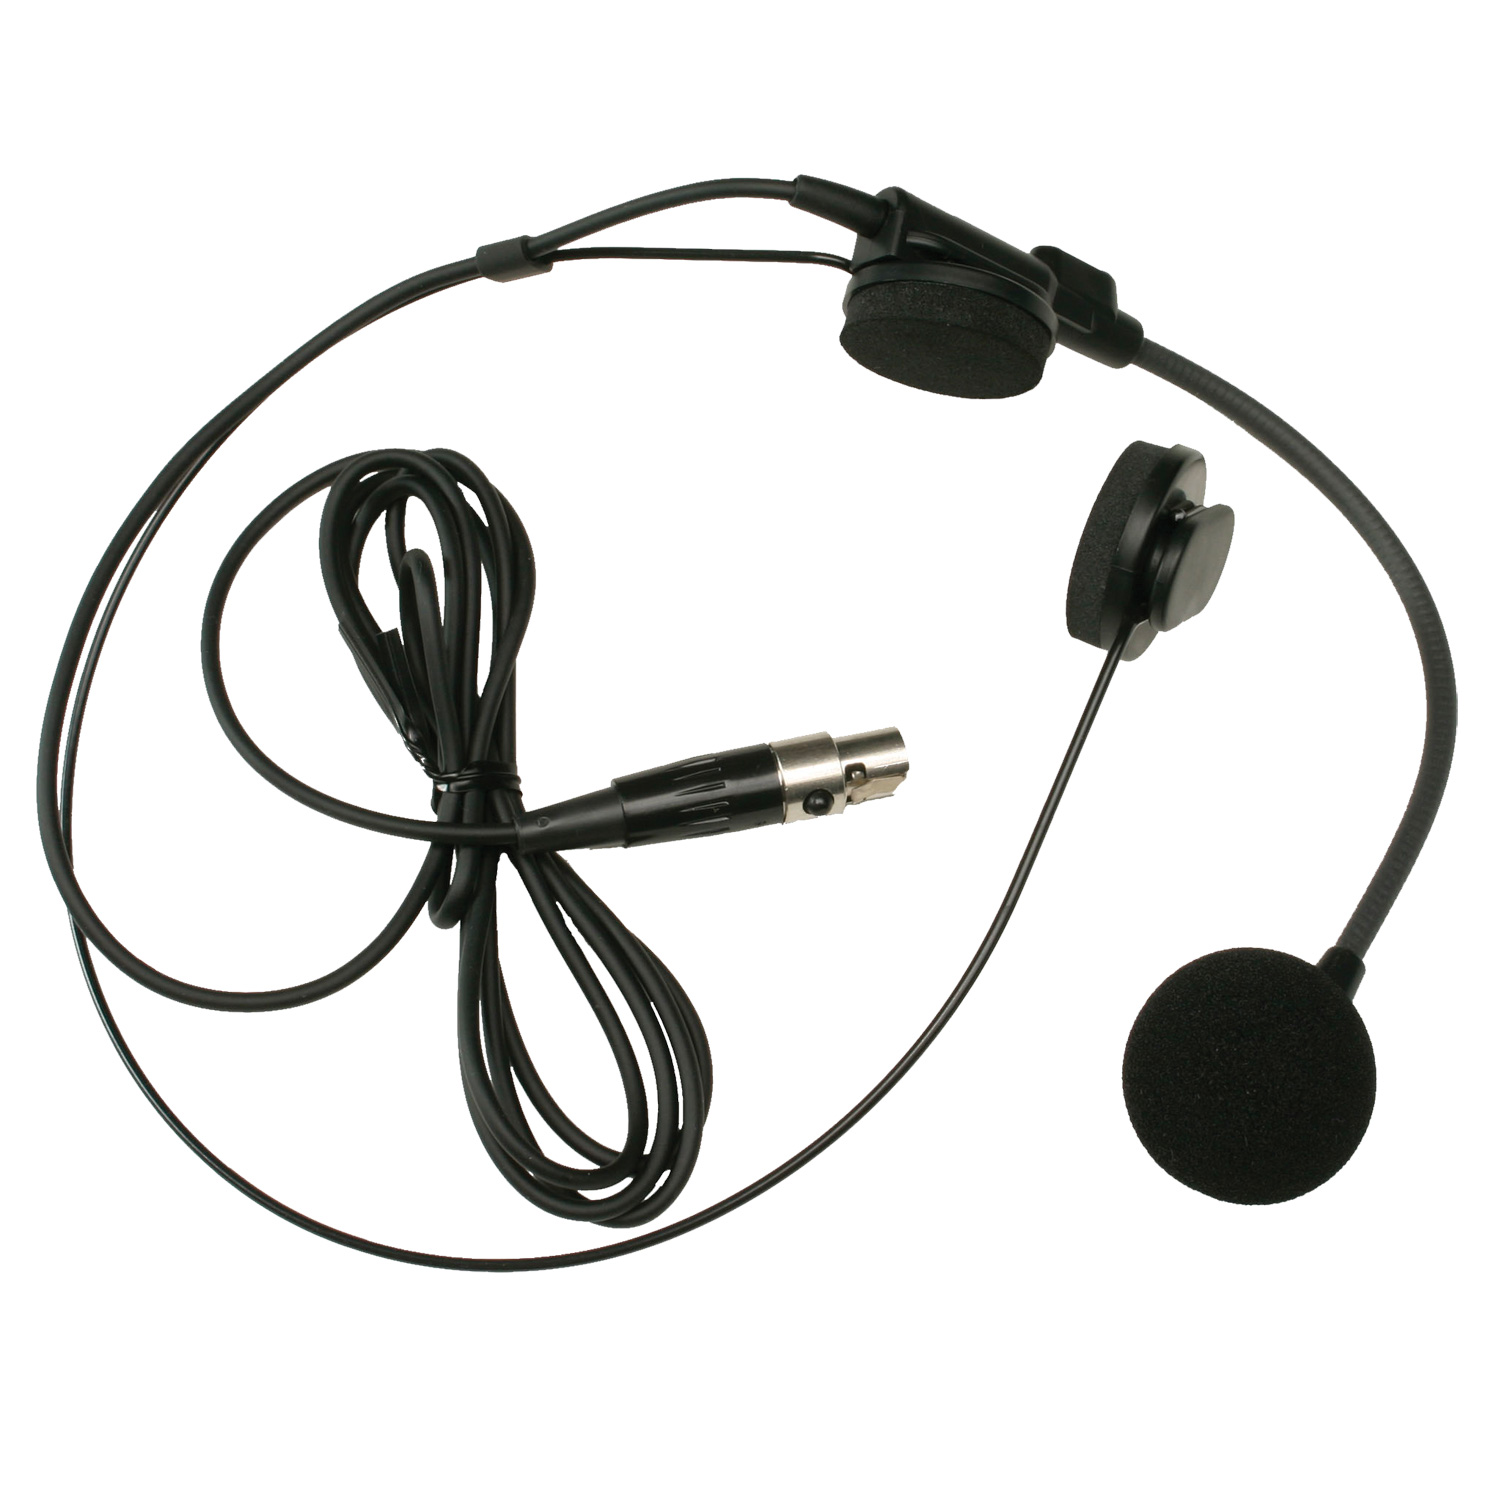 Headset Boom Microphone 2